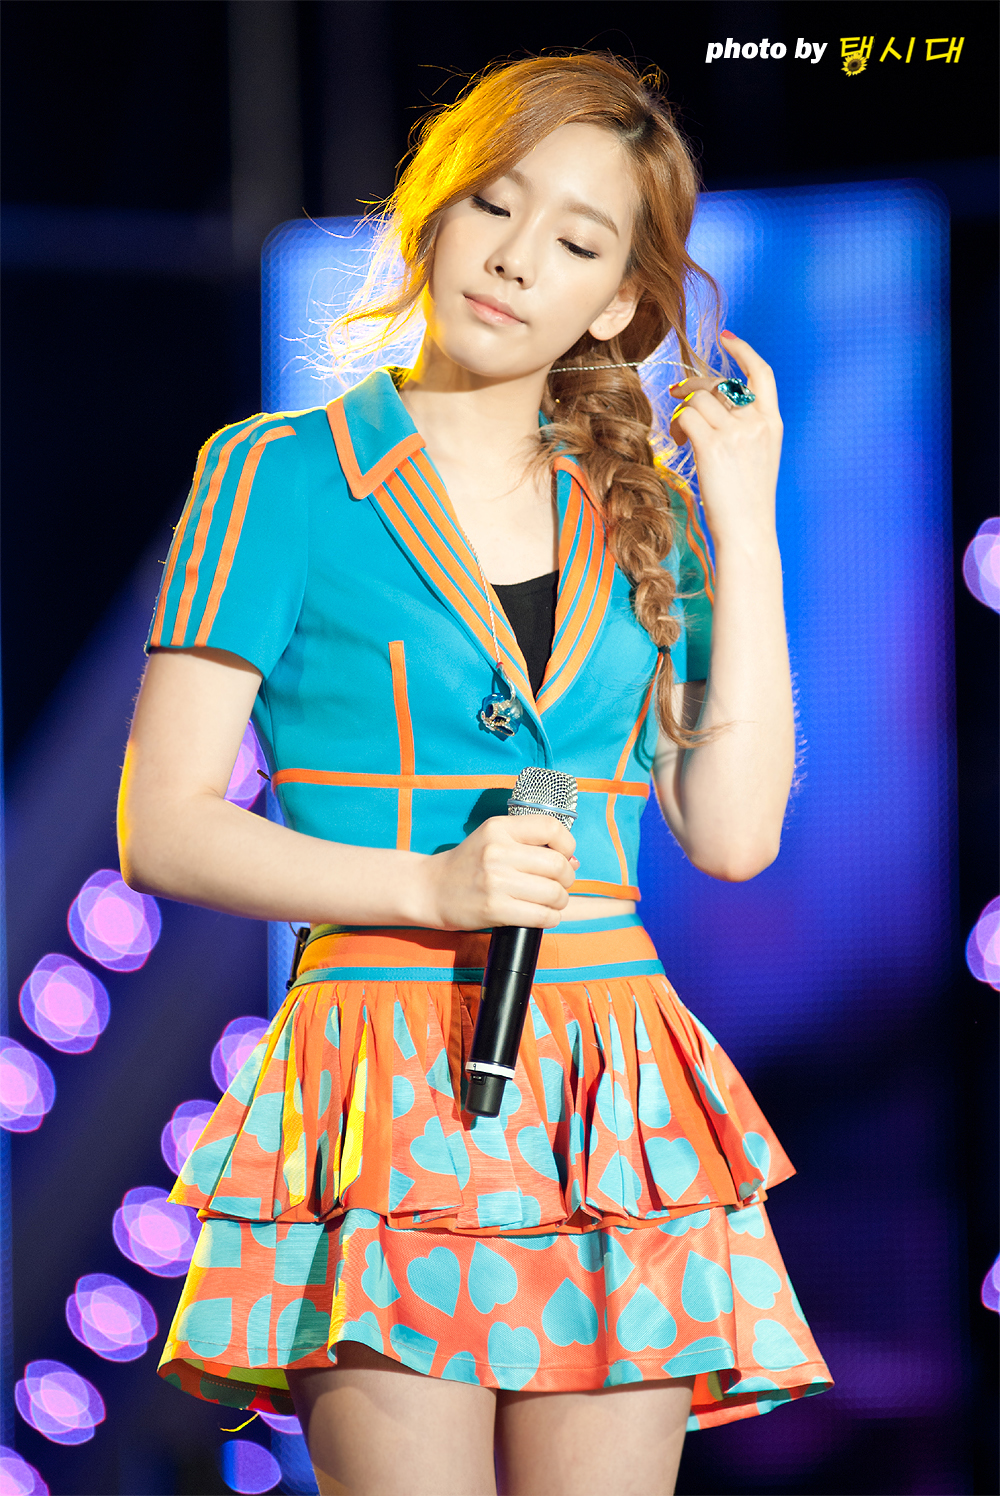 [PIC][30-05-2013]TaeTiSeo biểu diễn tại "PyeongTaek Concert" vào tối nay - Page 3 2217C94151AAC55B350E07